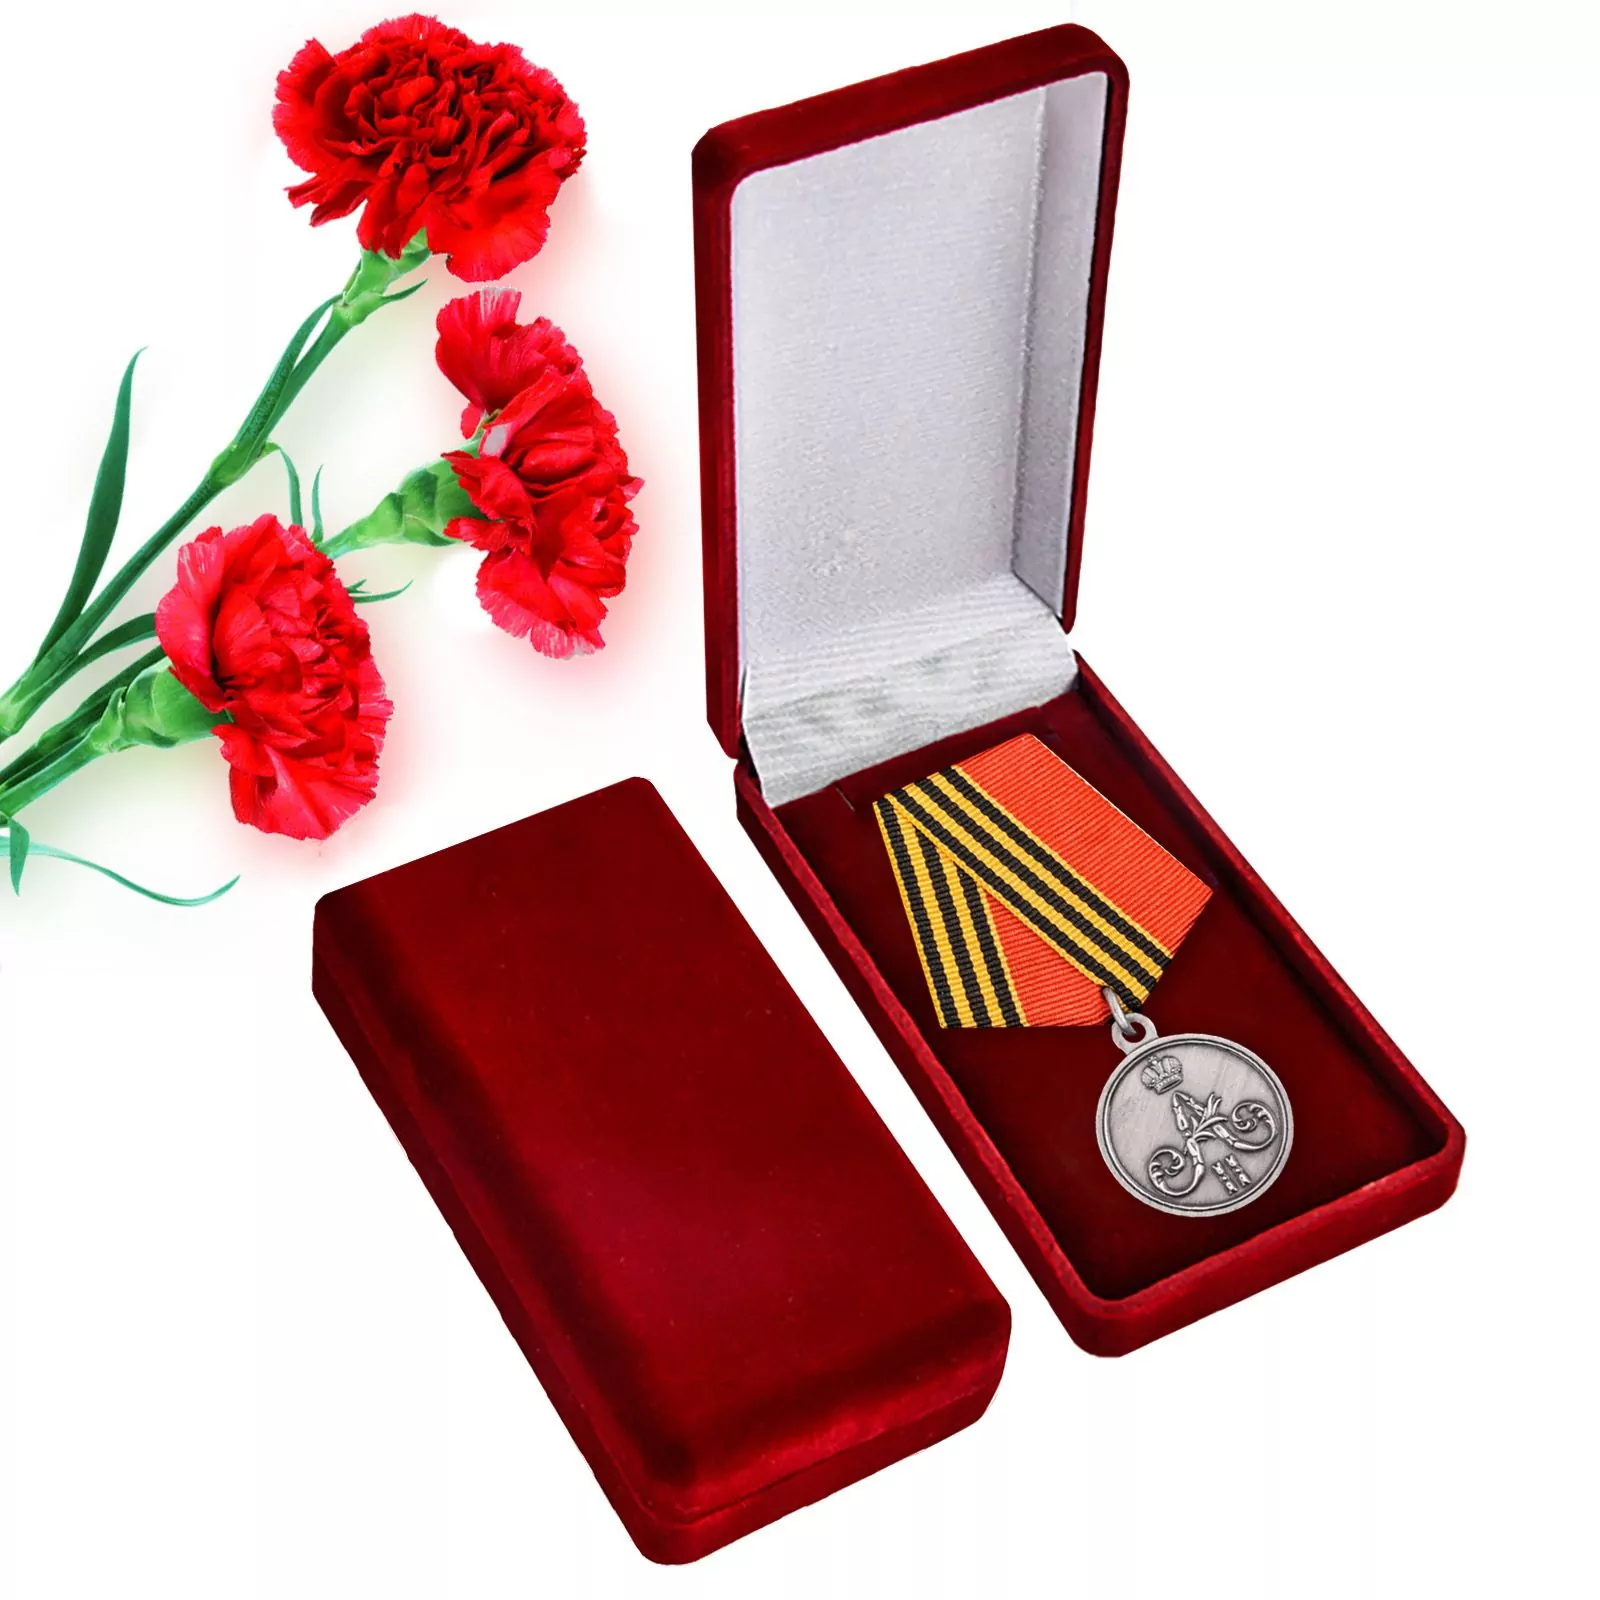 Памятная медаль "За покорение Чечни и Дагестана" в бархатистом презентабельном футляре